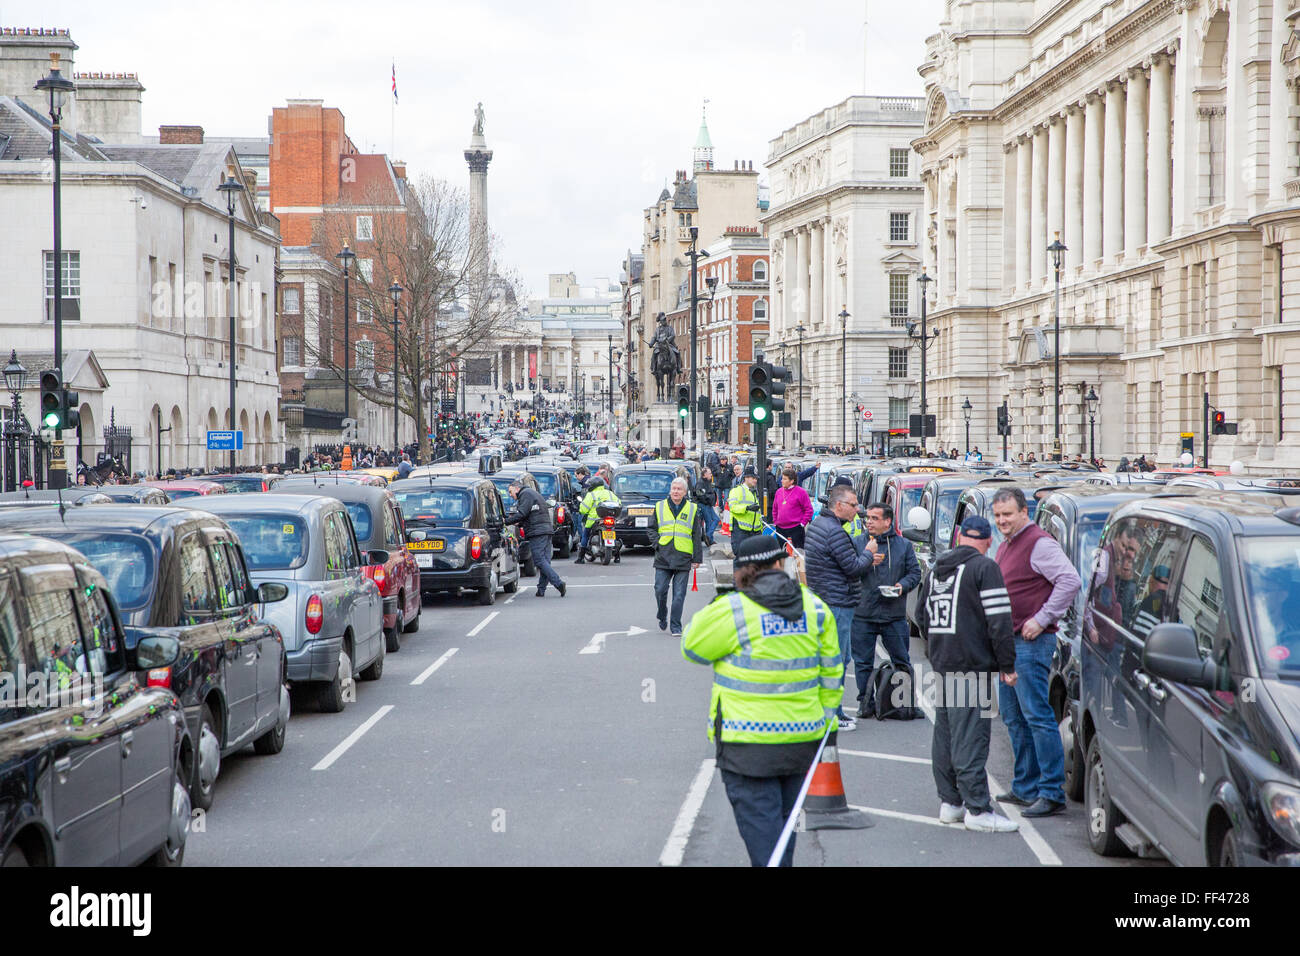 London, UK. 10. Februar 2016. Schwarzes Taxi Taxifahrer halten einen Bummelstreik Protest in Whitehall aus Protest gegen mangelnde staatliche Kontrolle des Minicab app Uber. Bildnachweis: Mark Kerrison/Alamy Live-Nachrichten Stockfoto